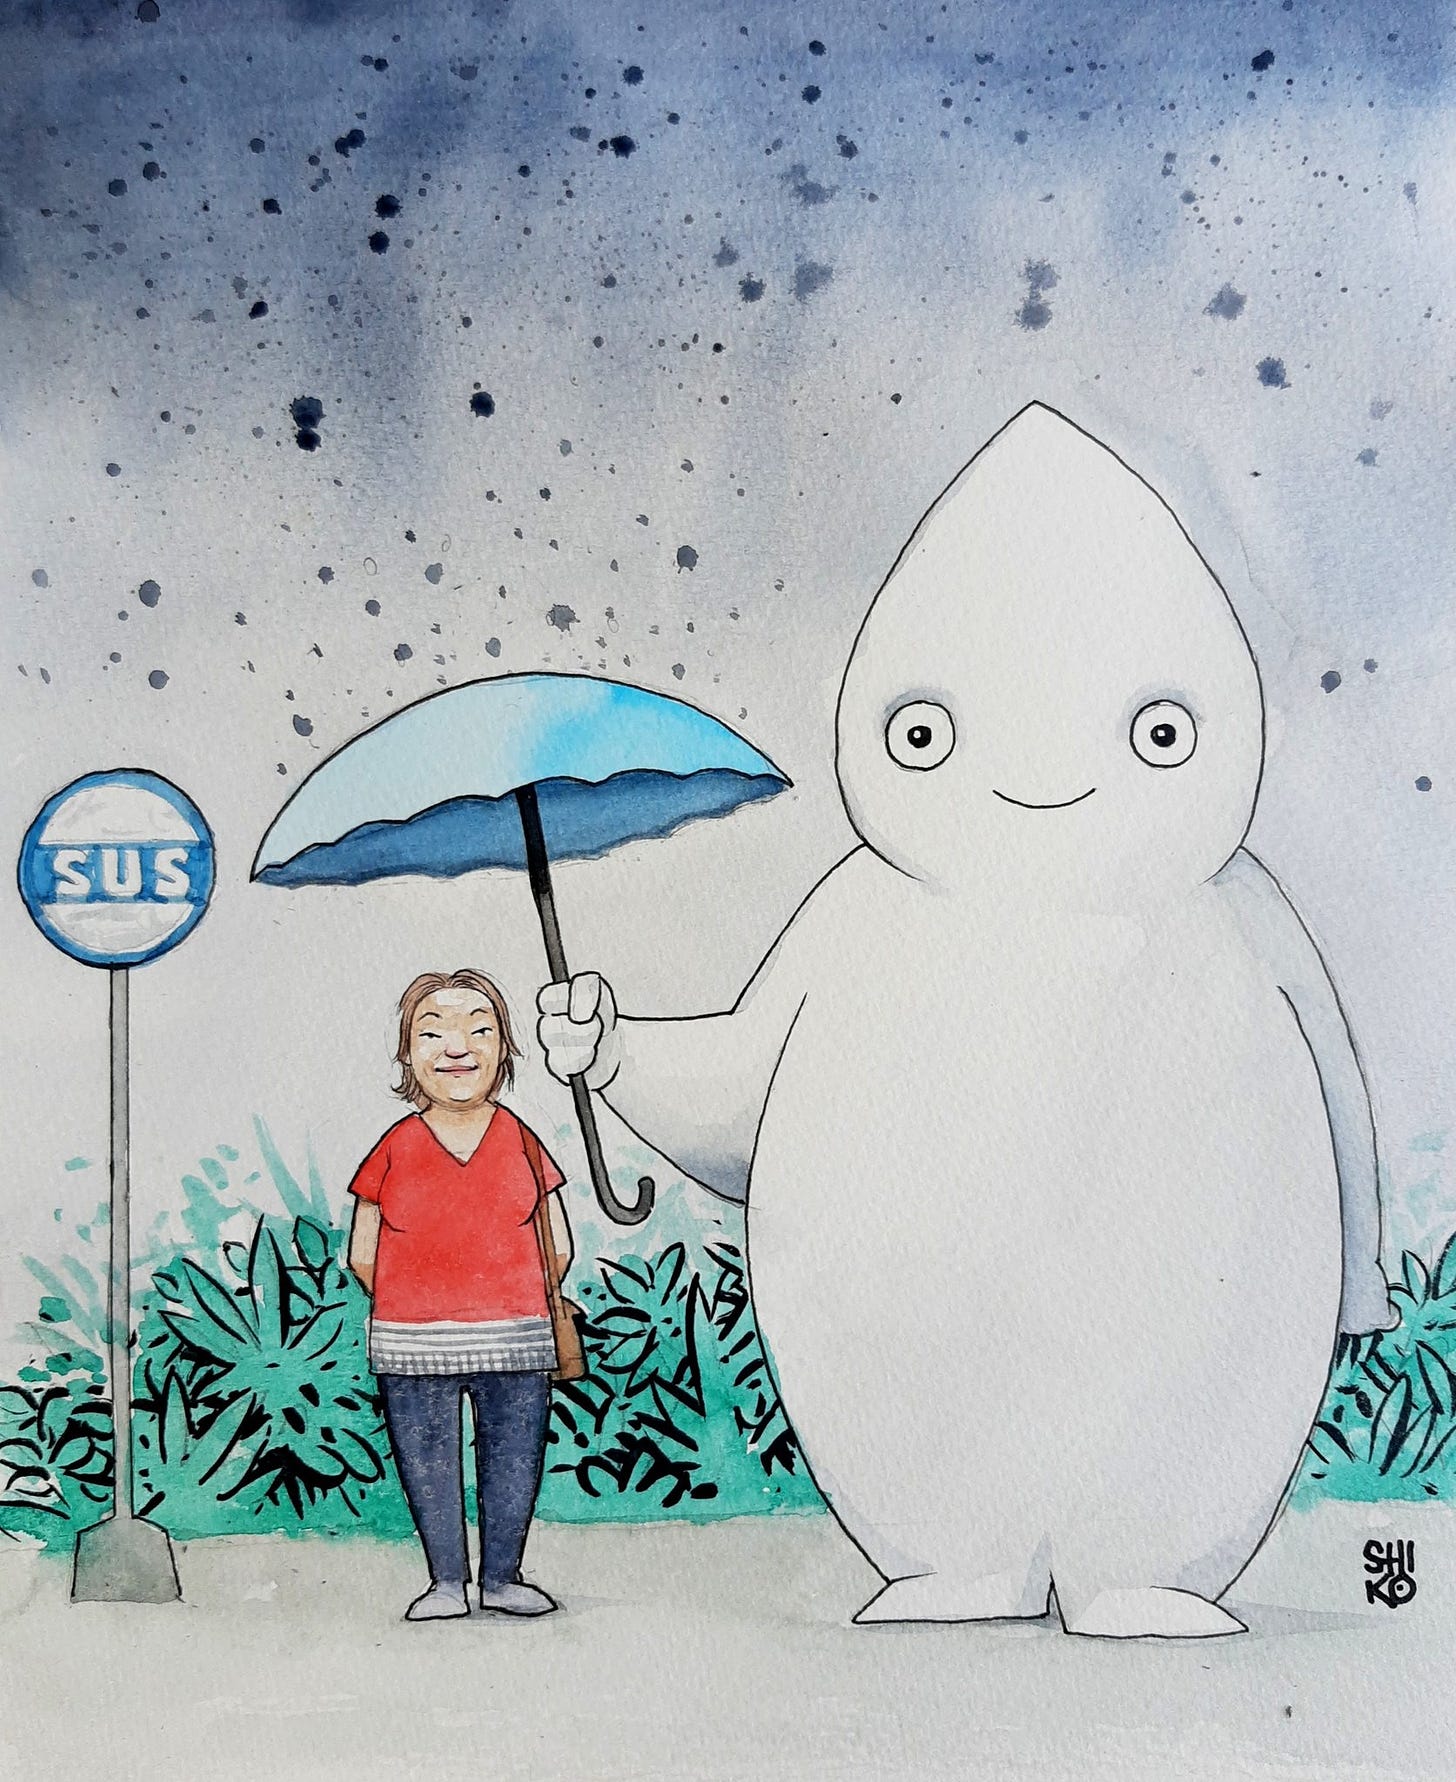 Ilustração remetendo à icônica cena de Meu amigo Totoro, de Miyazaki, em que um gato gigante segura um guarda-chuva para uma garotinha no ponto de ônibus. em vez disso, um Zé Gotinha gigante segurando um guarda-chuva para proteger uma senhora, ao lado de uma placa escrito SUS.